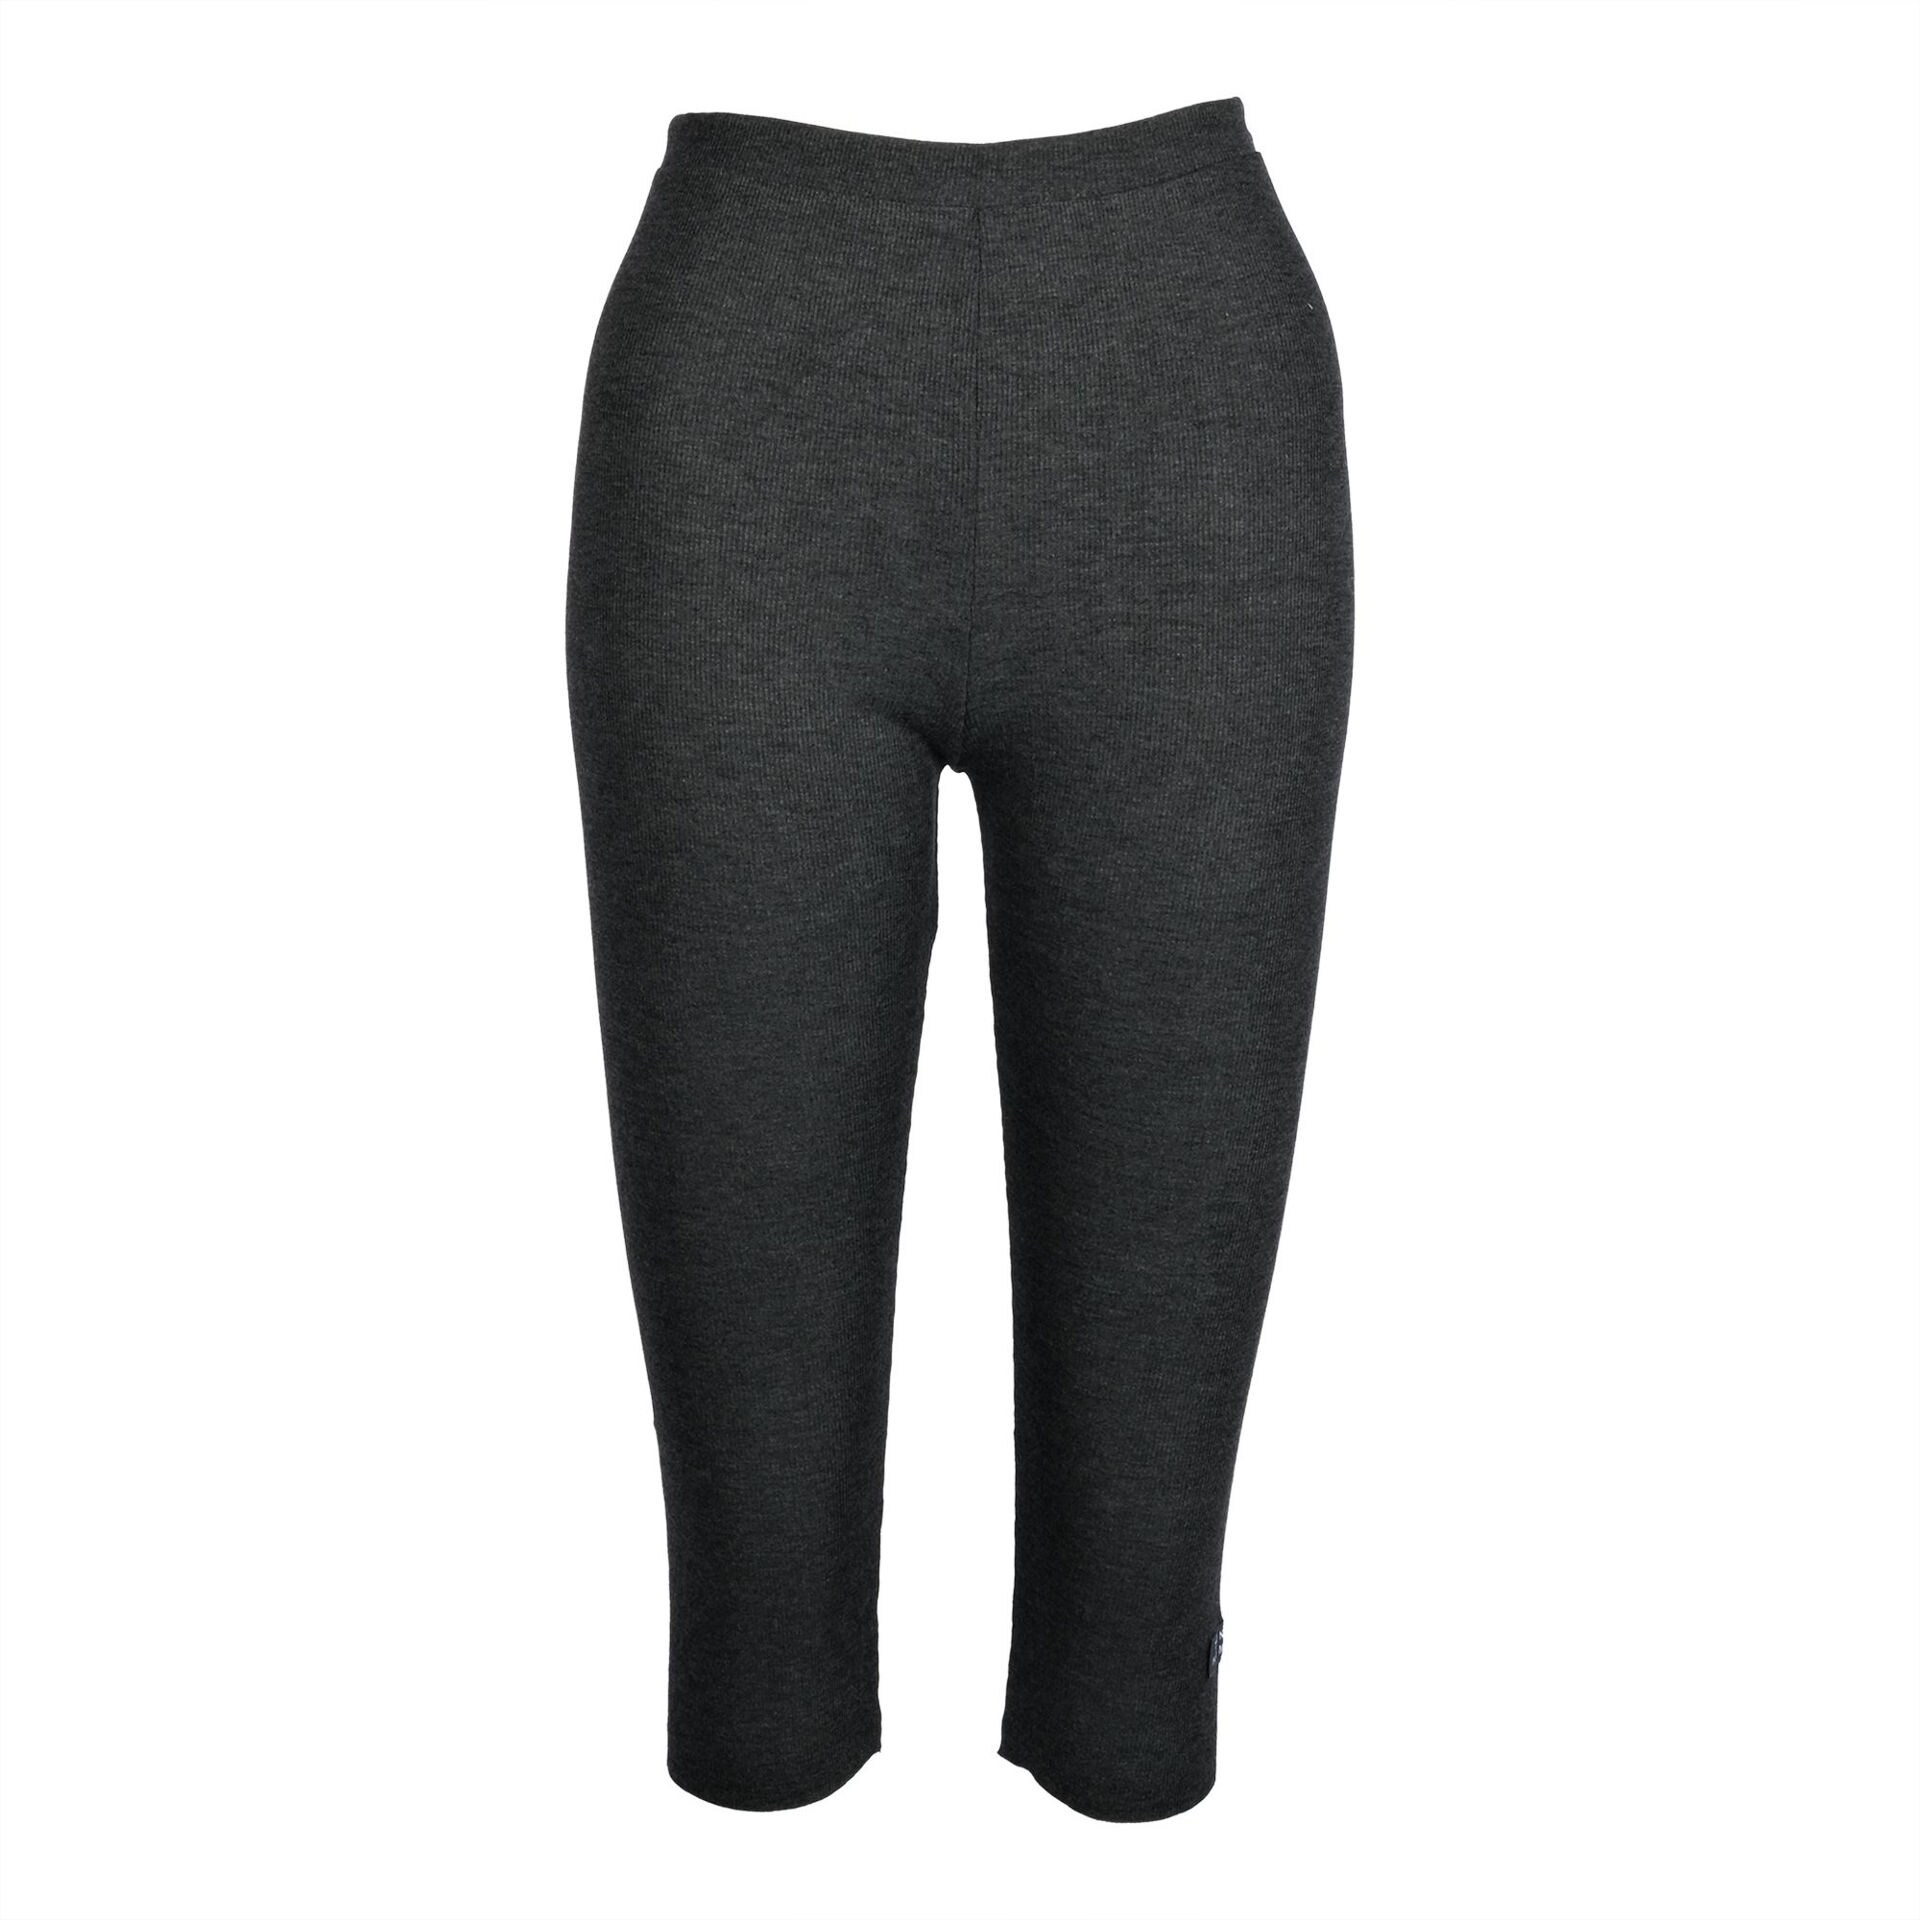 Women's sports capri pants | Black capri leggings | Pompeia